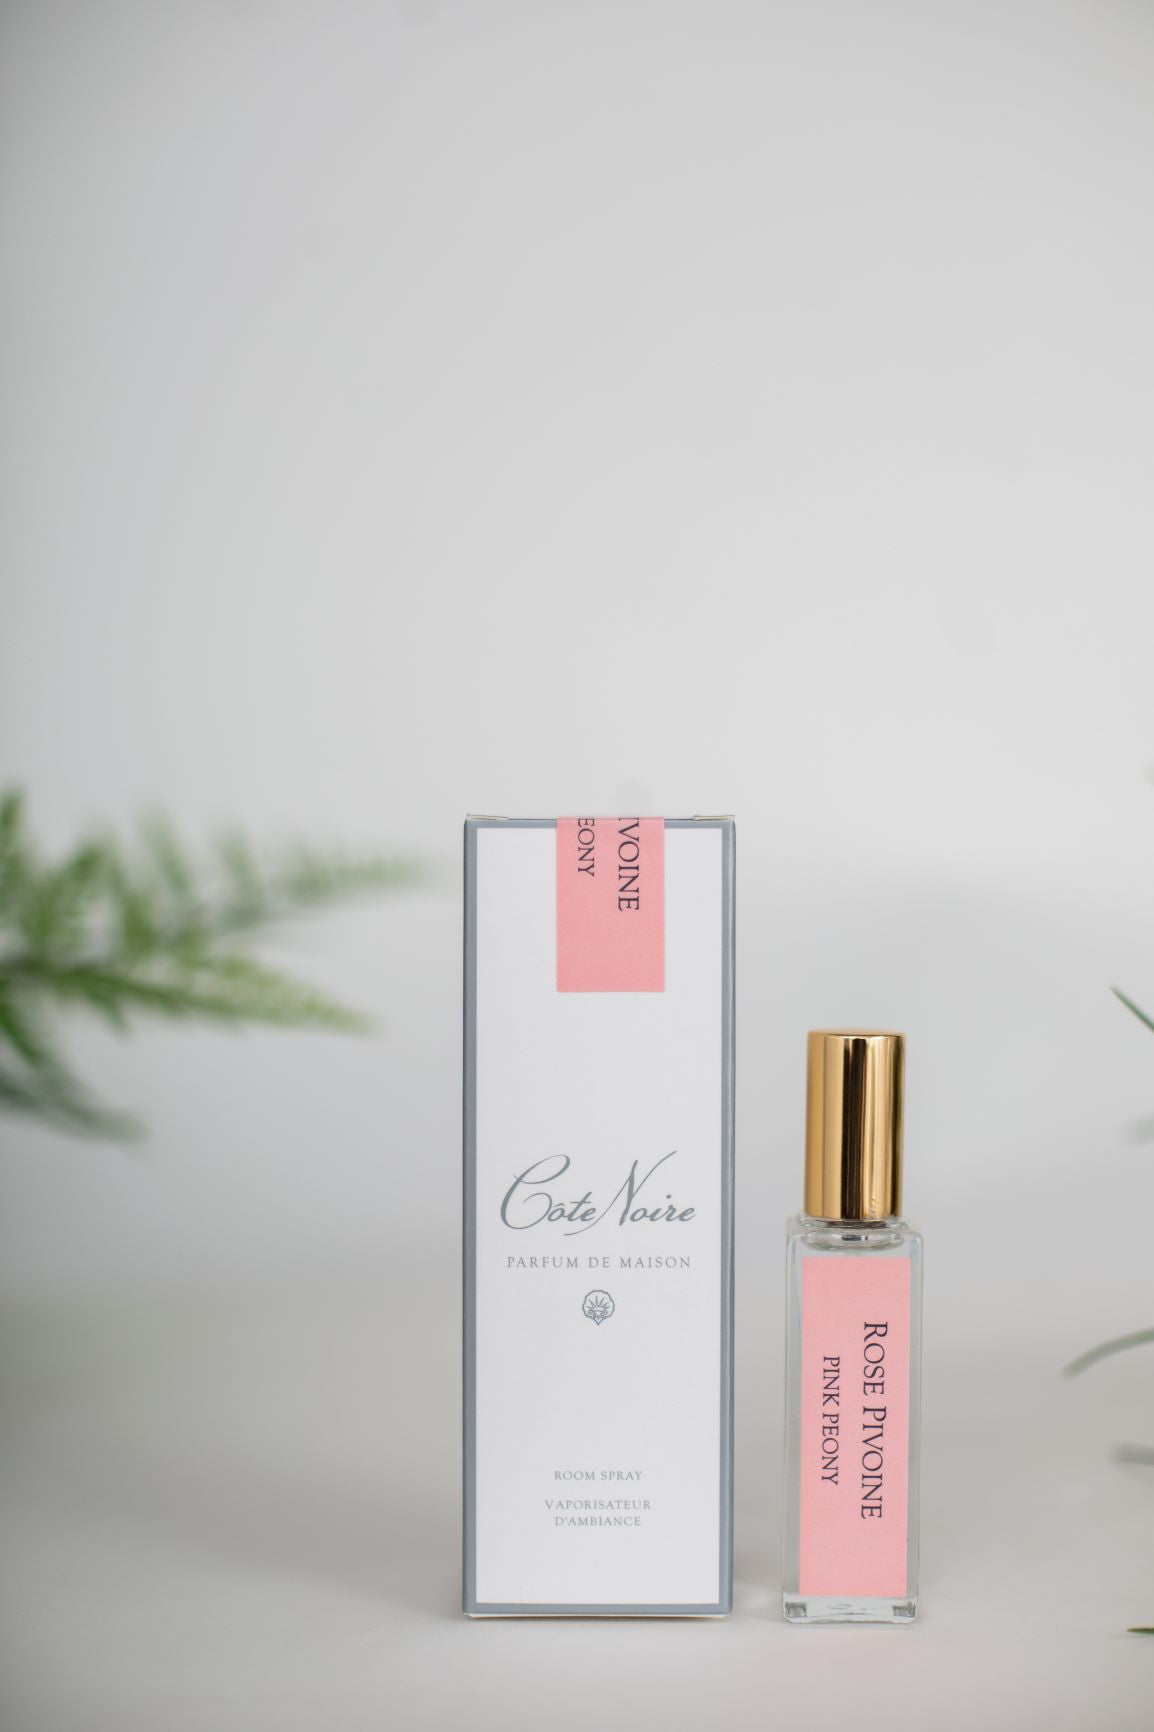 parfumflaeschchen mit goldenem deckel neben weisser verpackung. weisser hintergrund. pink peony.